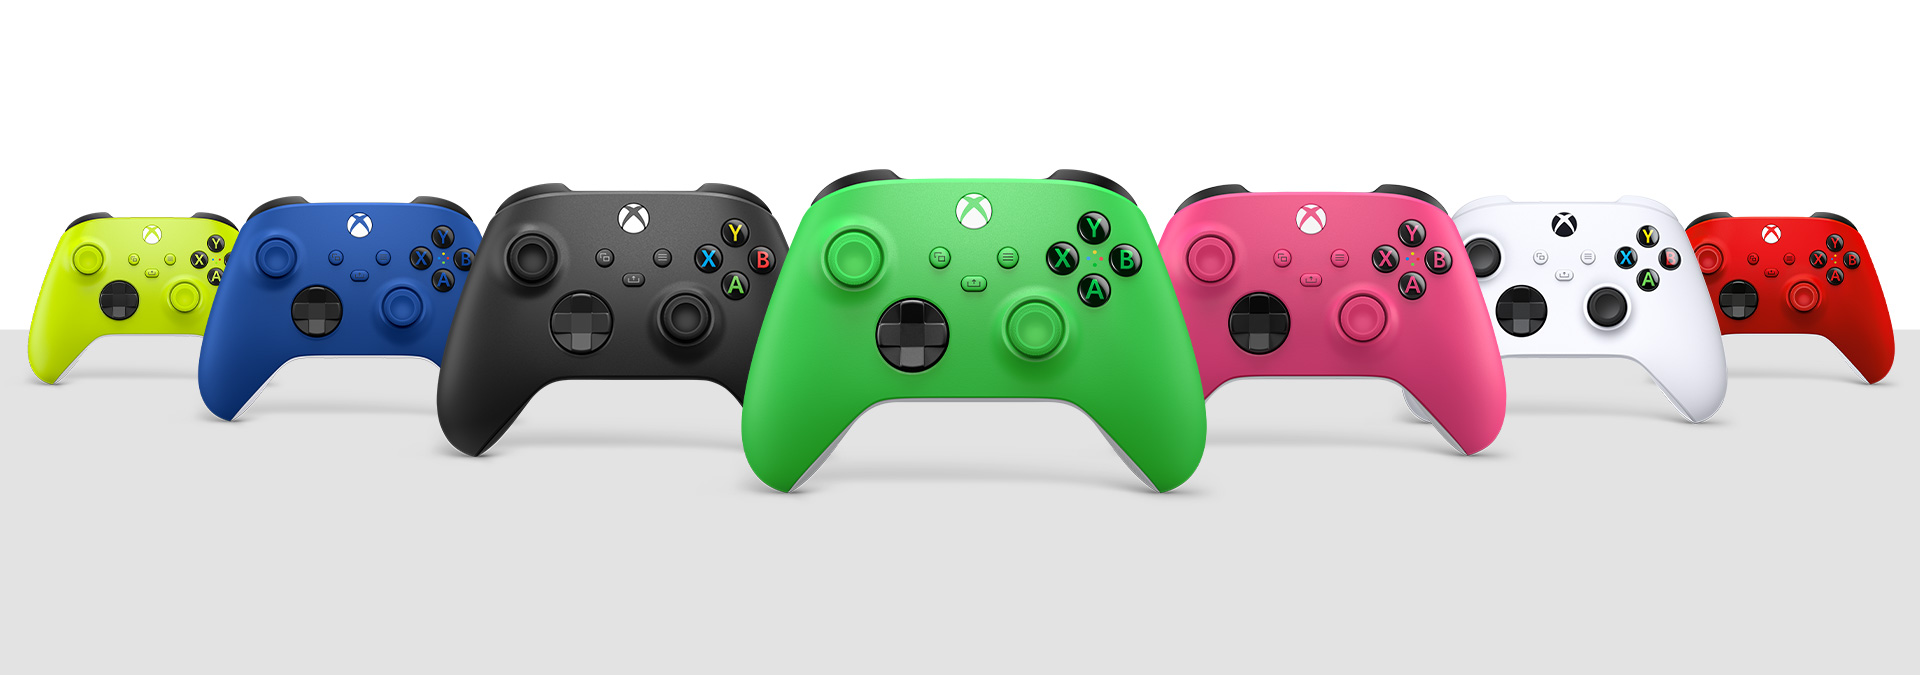 荧光绿、冲击蓝、磨砂黑、绿色、深粉色、冰雪白和锦鲤红 Xbox 无线控制器